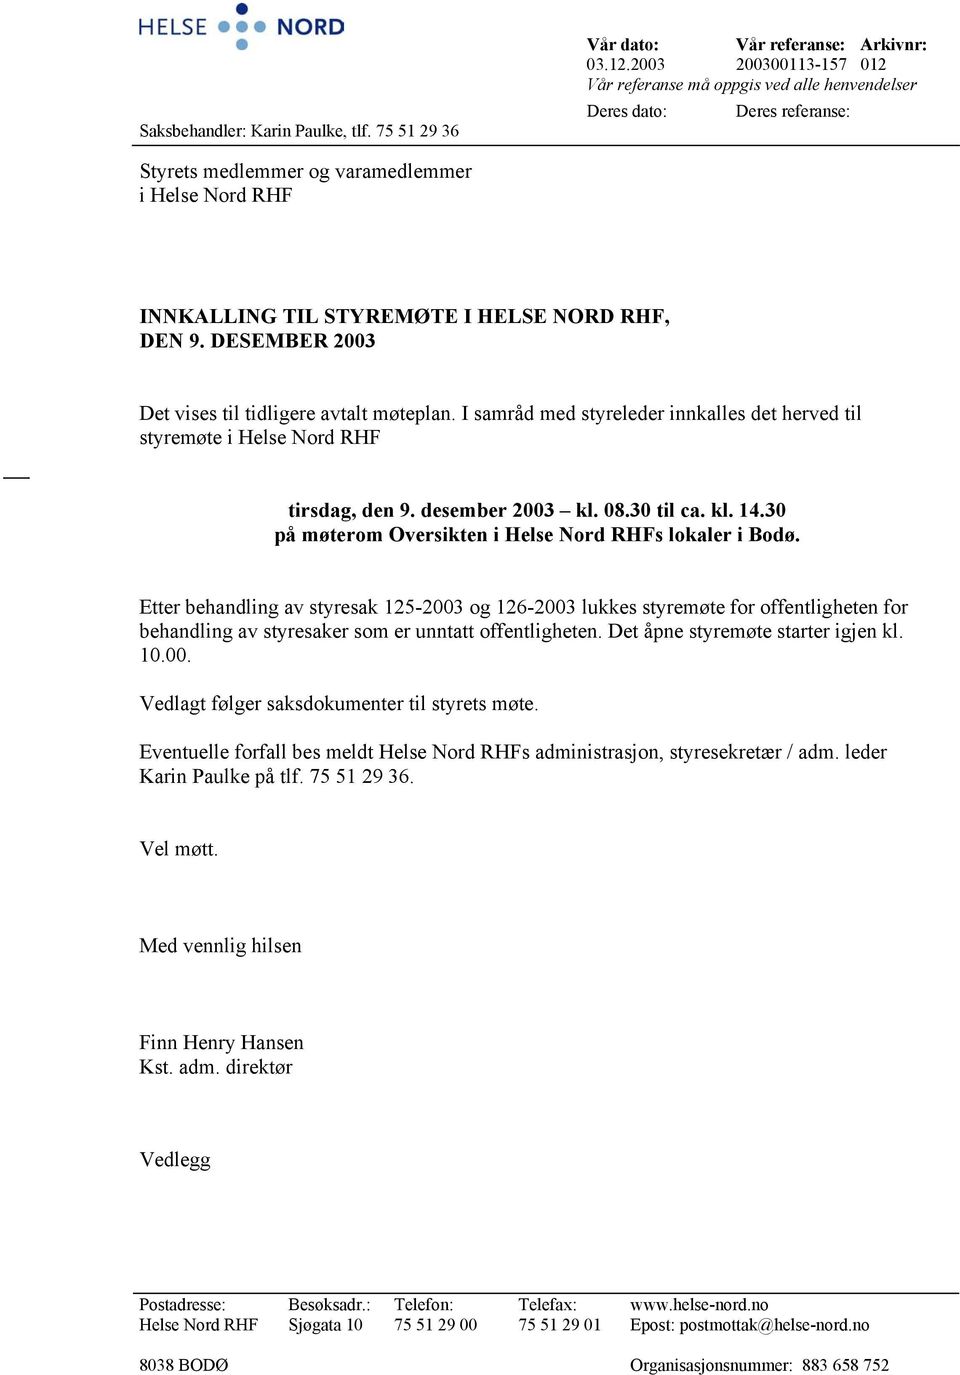 DESEMBER 2003 Det vises til tidligere avtalt møteplan. I samråd med styreleder innkalles det herved til styremøte i Helse Nord RHF tirsdag, den 9. desember 2003 kl. 08.30 til ca. kl. 14.